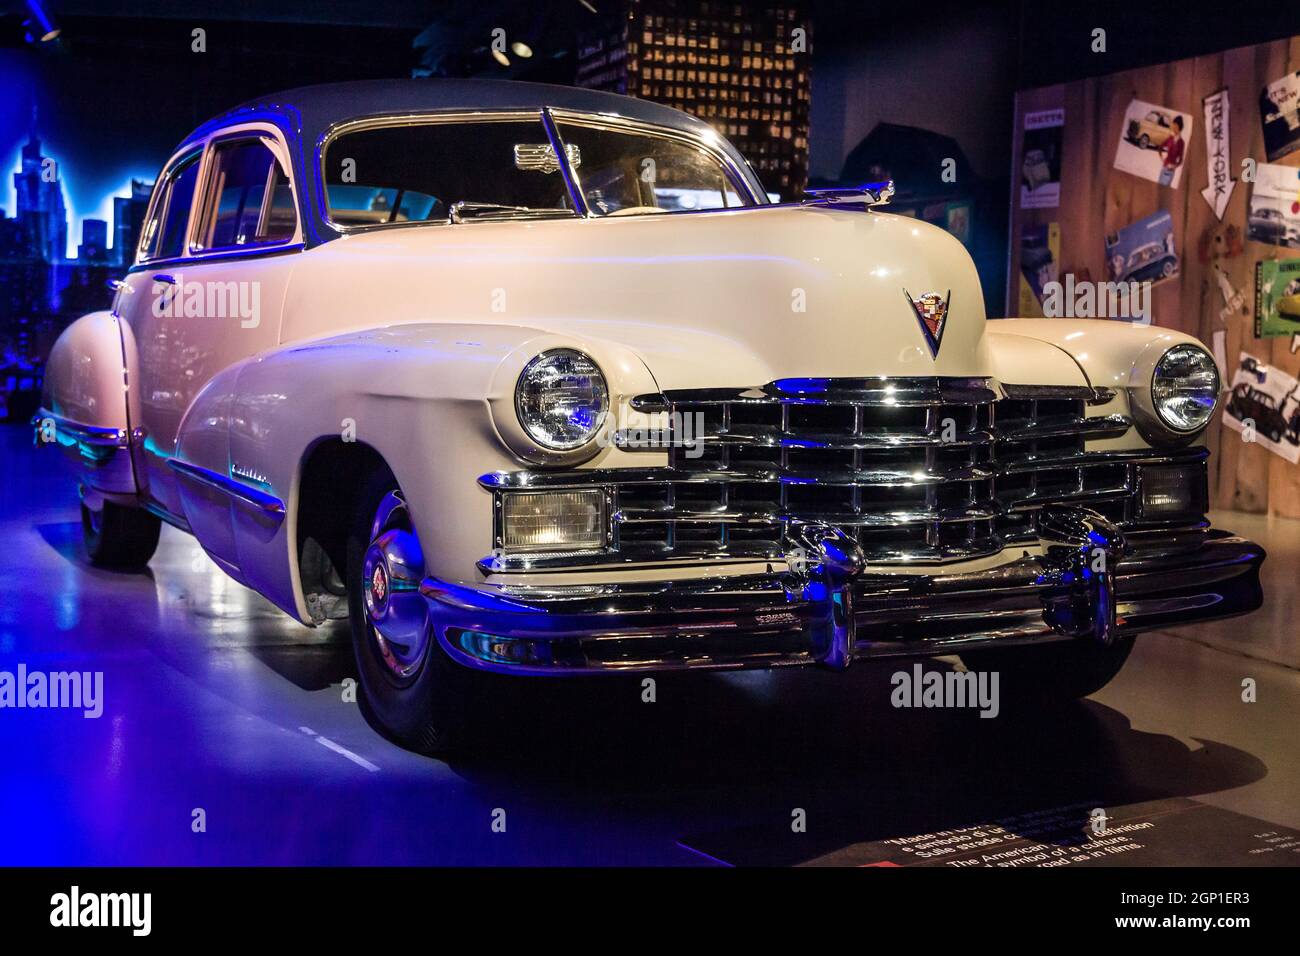 Turin, Italie - 13 août 2021 : 1947 Cadillac 62 présenté au Musée national de l'automobile (MAUTO) à Turin, Italie. Banque D'Images